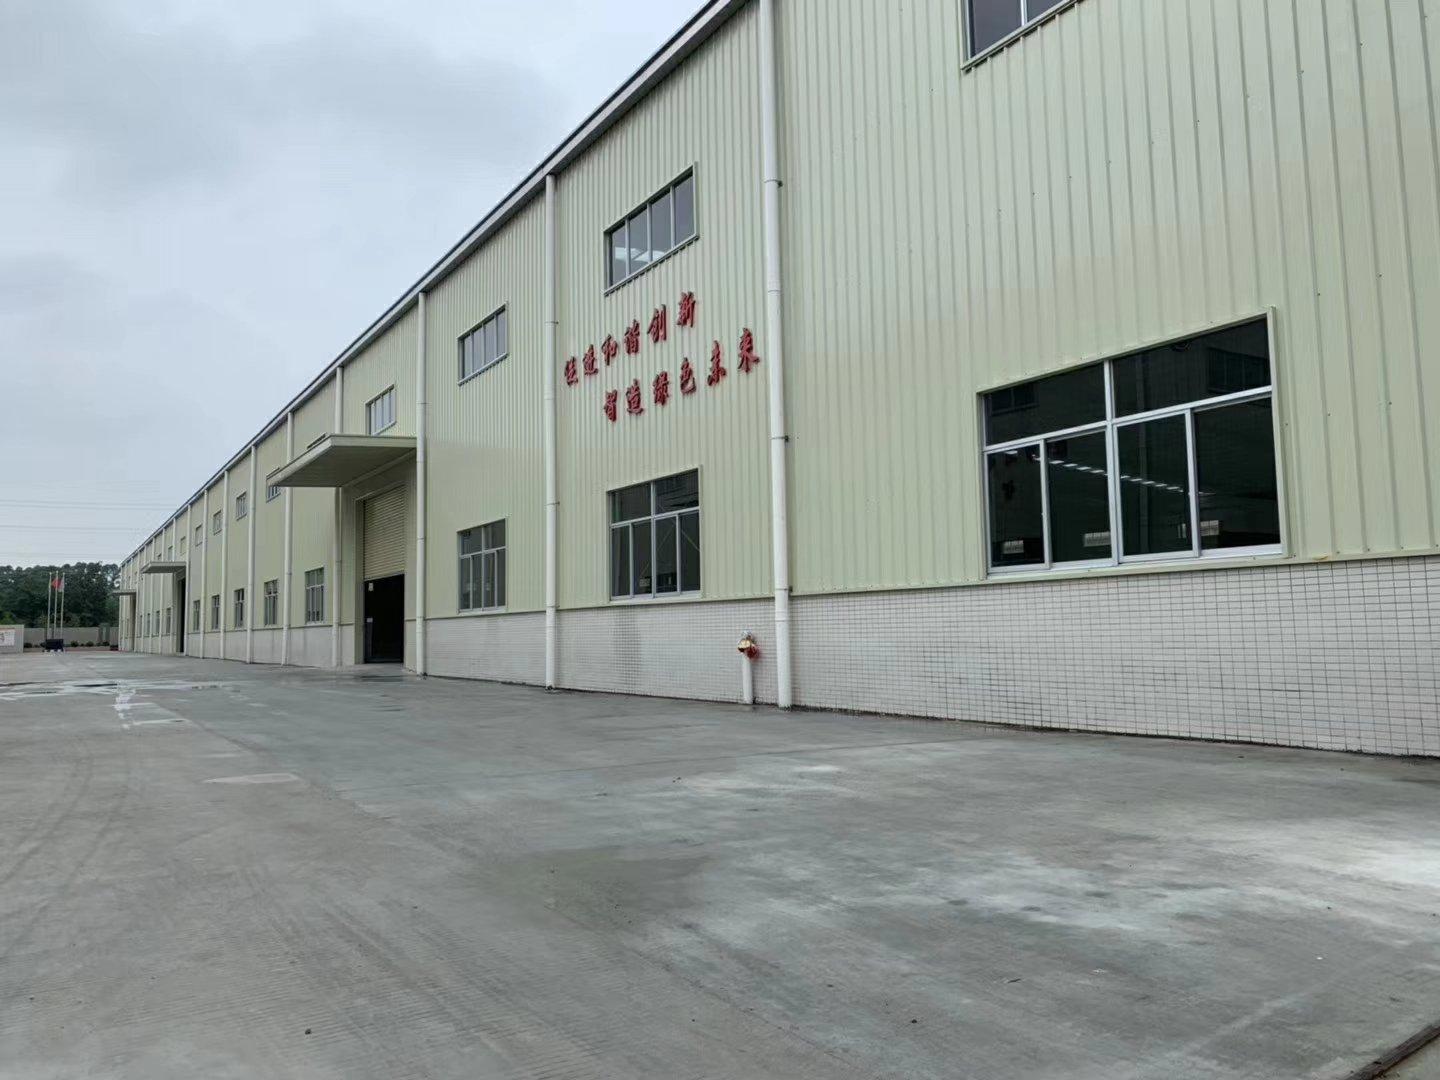 园洲镇禾山村216县道旁边非常合适做仓库的单一层厂房出租。